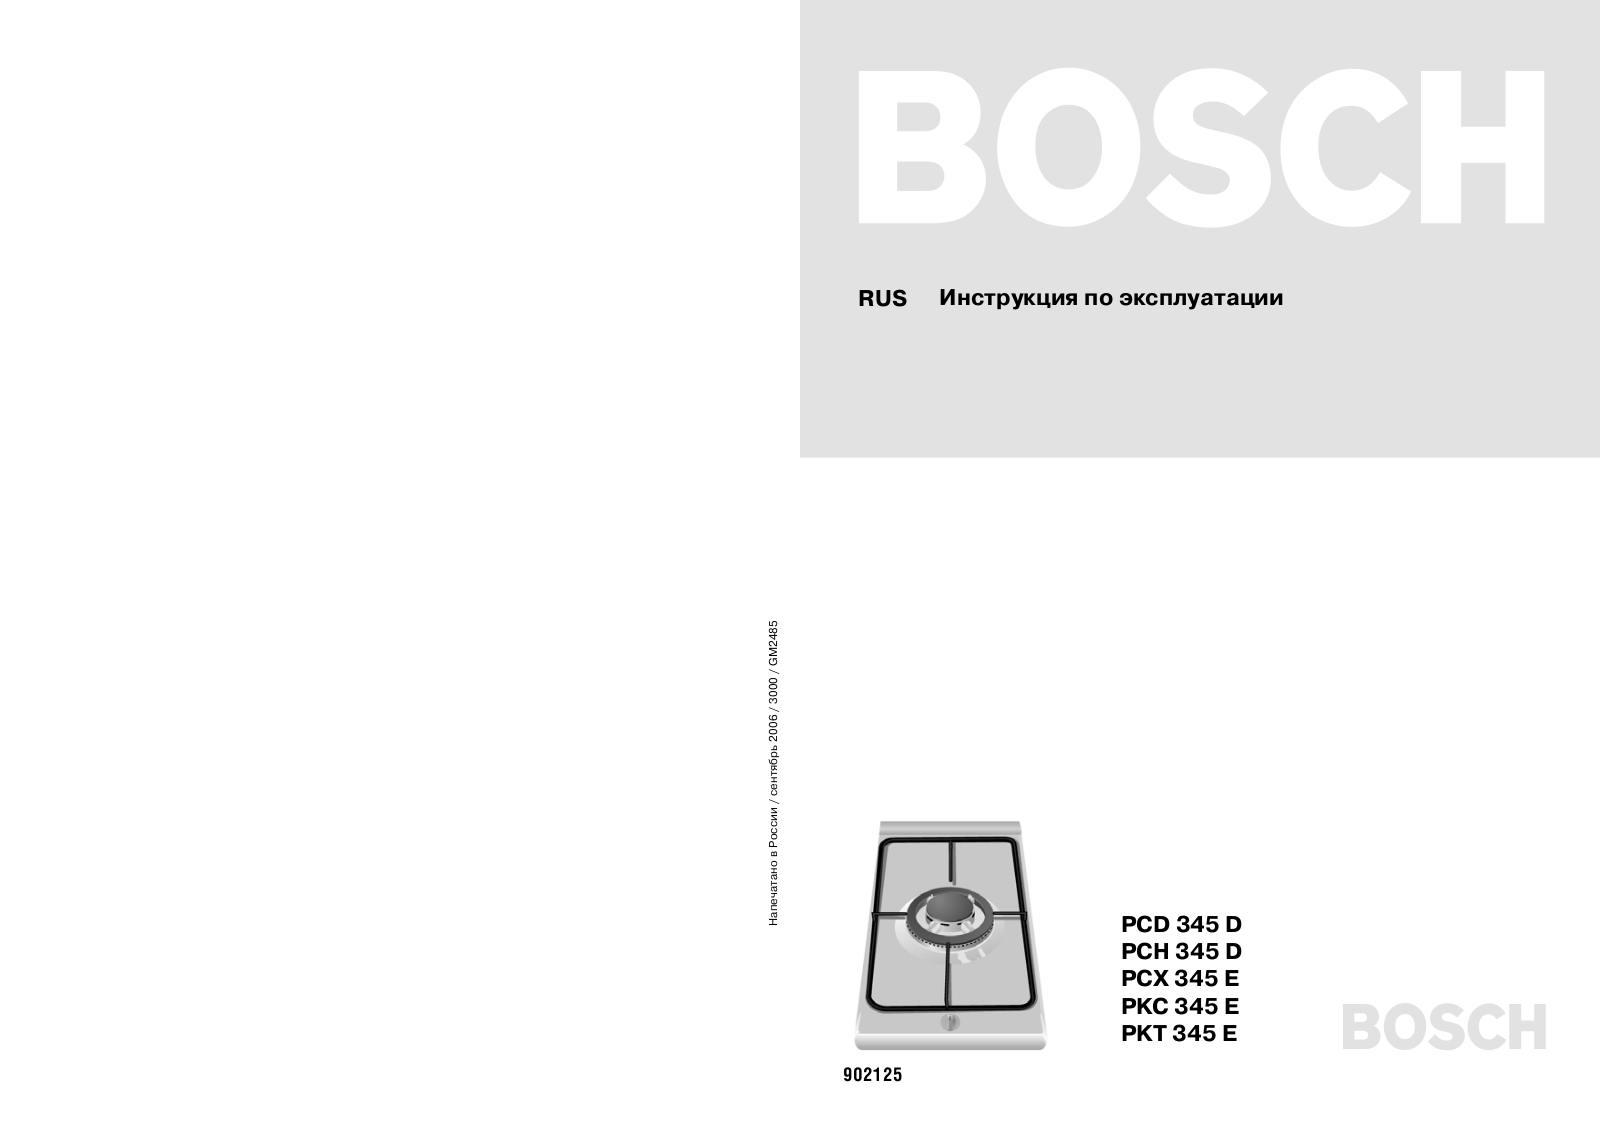 Bosch PCD 345 D User Manual